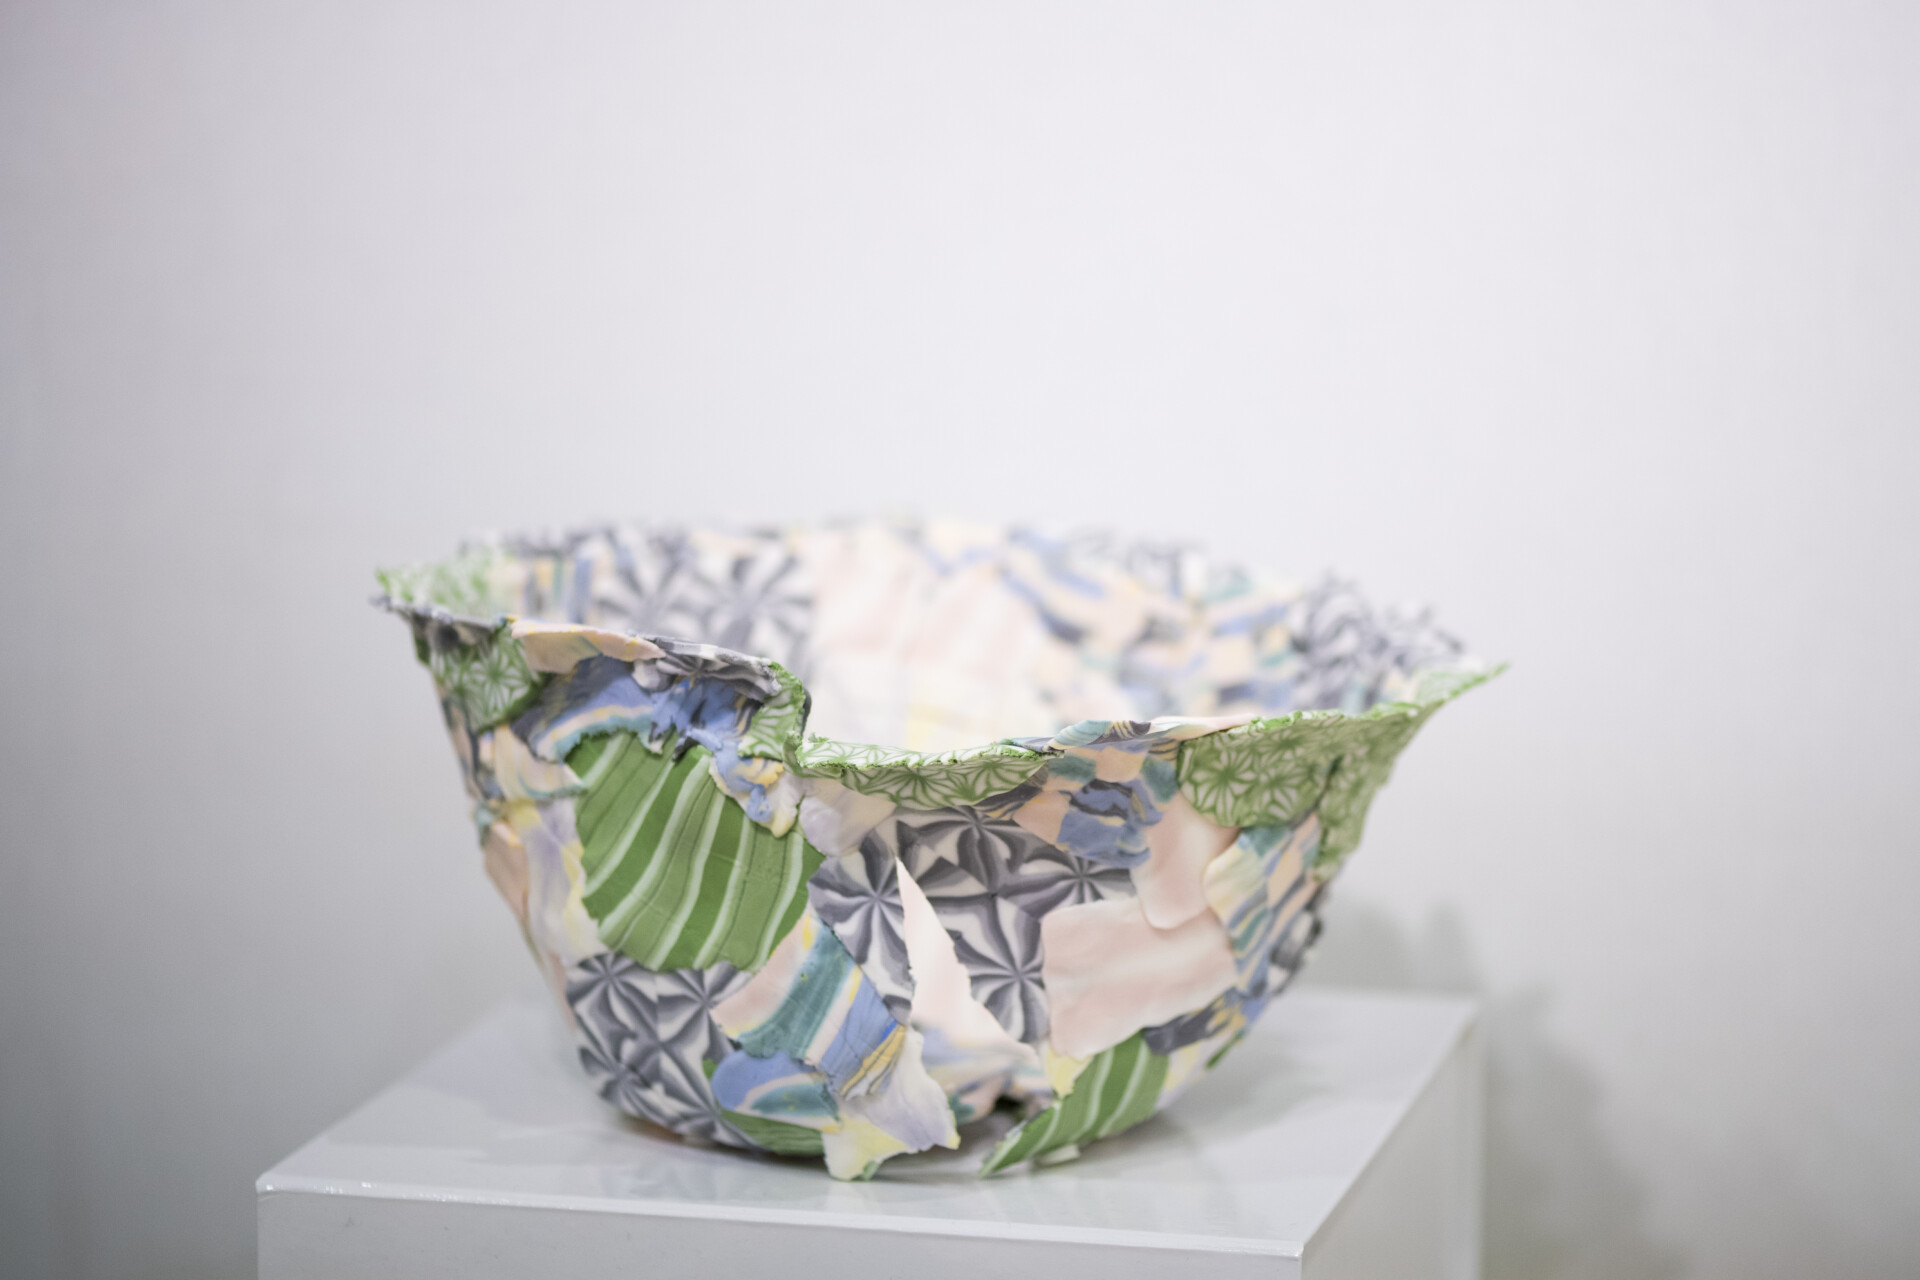 Objet métier d'art motifs teintés dans la masse de la porcelaine par Yulo Kuramatsu, exposé sur le salon Ob'Art Paris 2023